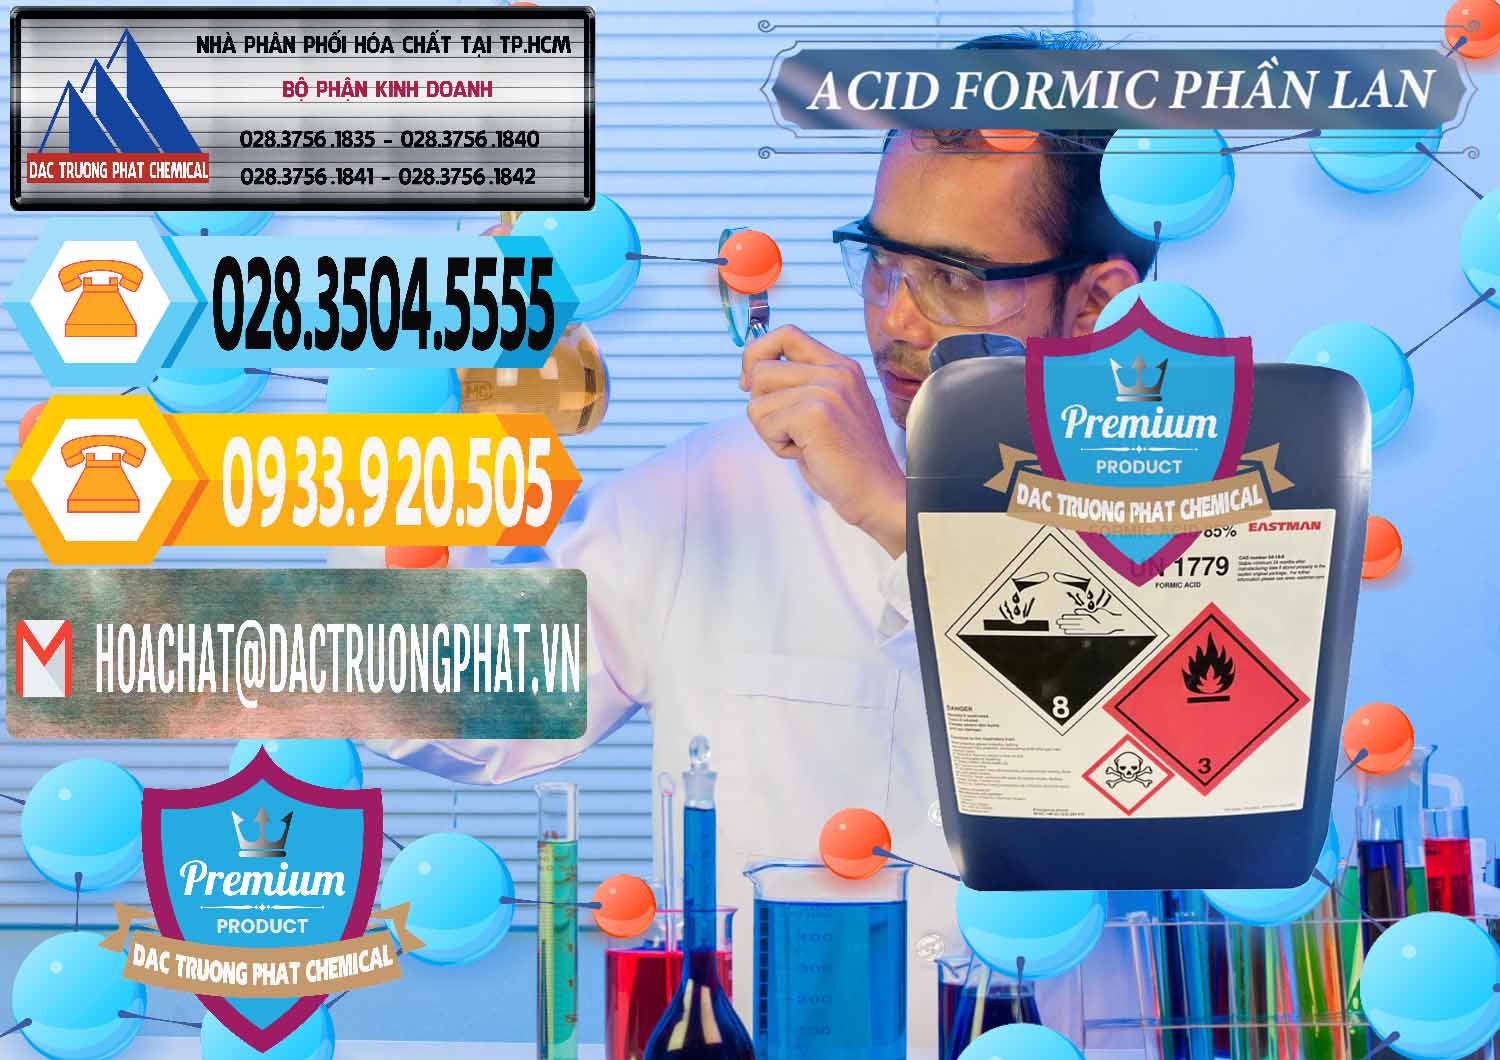 Chuyên bán _ cung cấp Acid Formic - Axit Formic Phần Lan Finland - 0376 - Chuyên phân phối ( nhập khẩu ) hóa chất tại TP.HCM - hoachattayrua.net